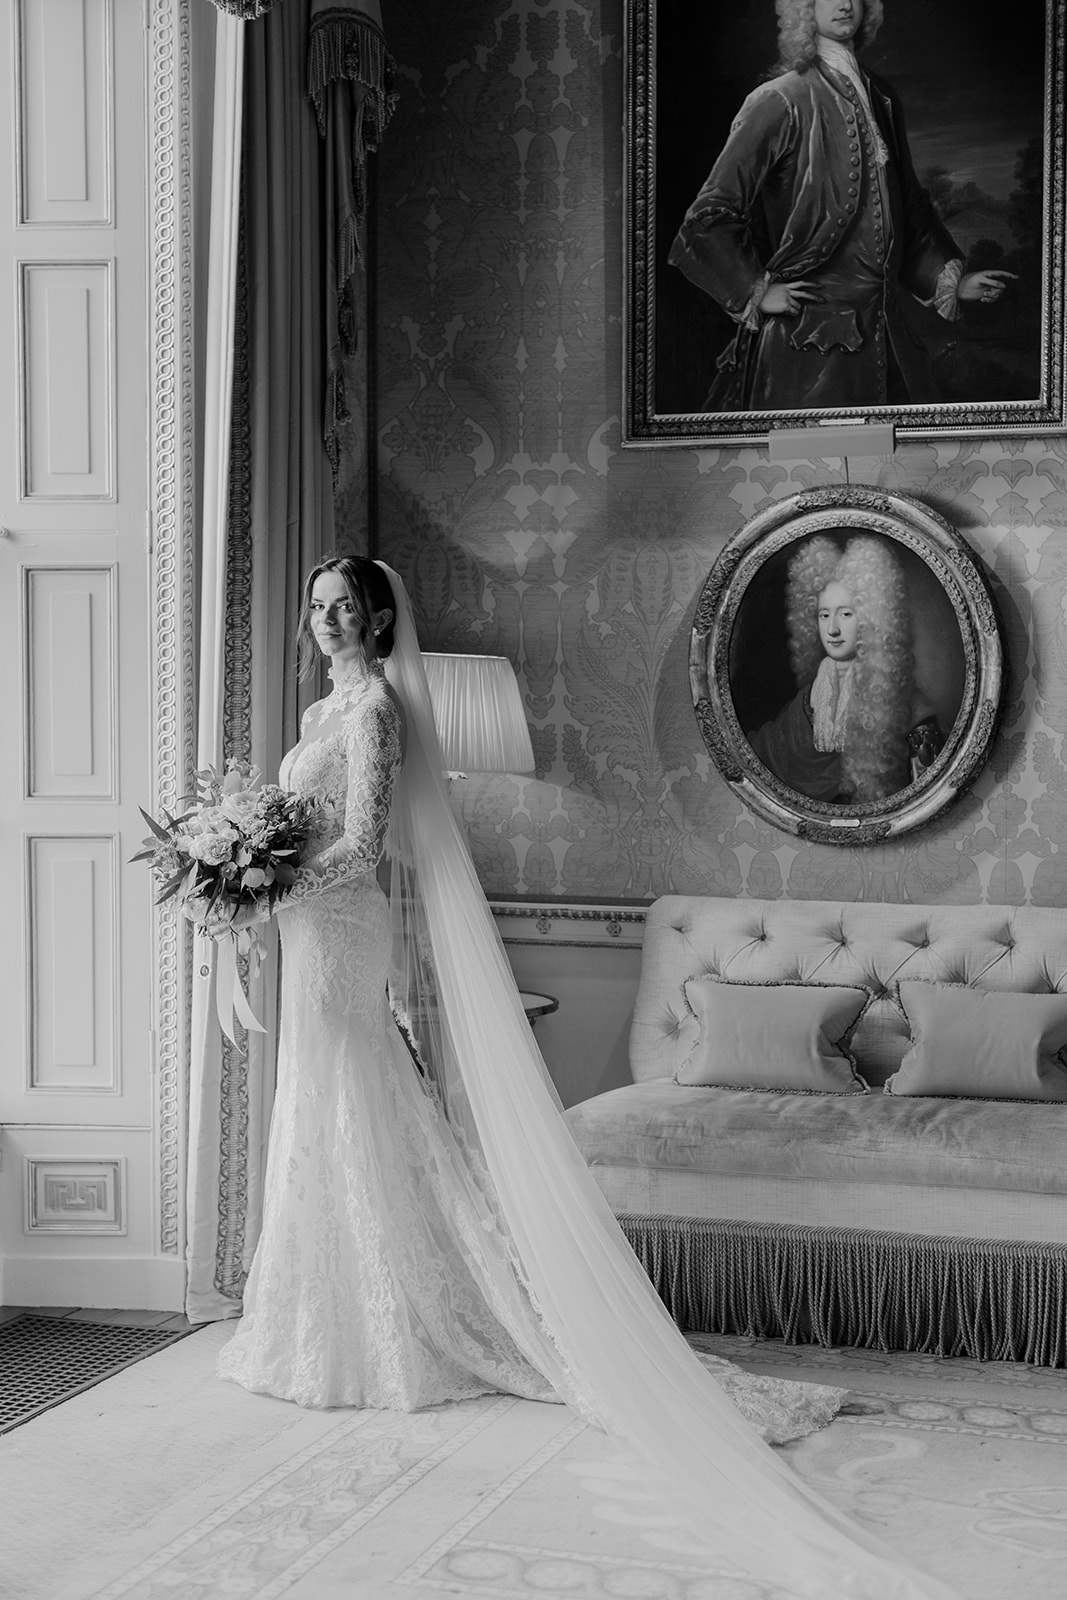 Bride in Zuhair Murhad wedding dress at Ballyfin Demesne in Ireland